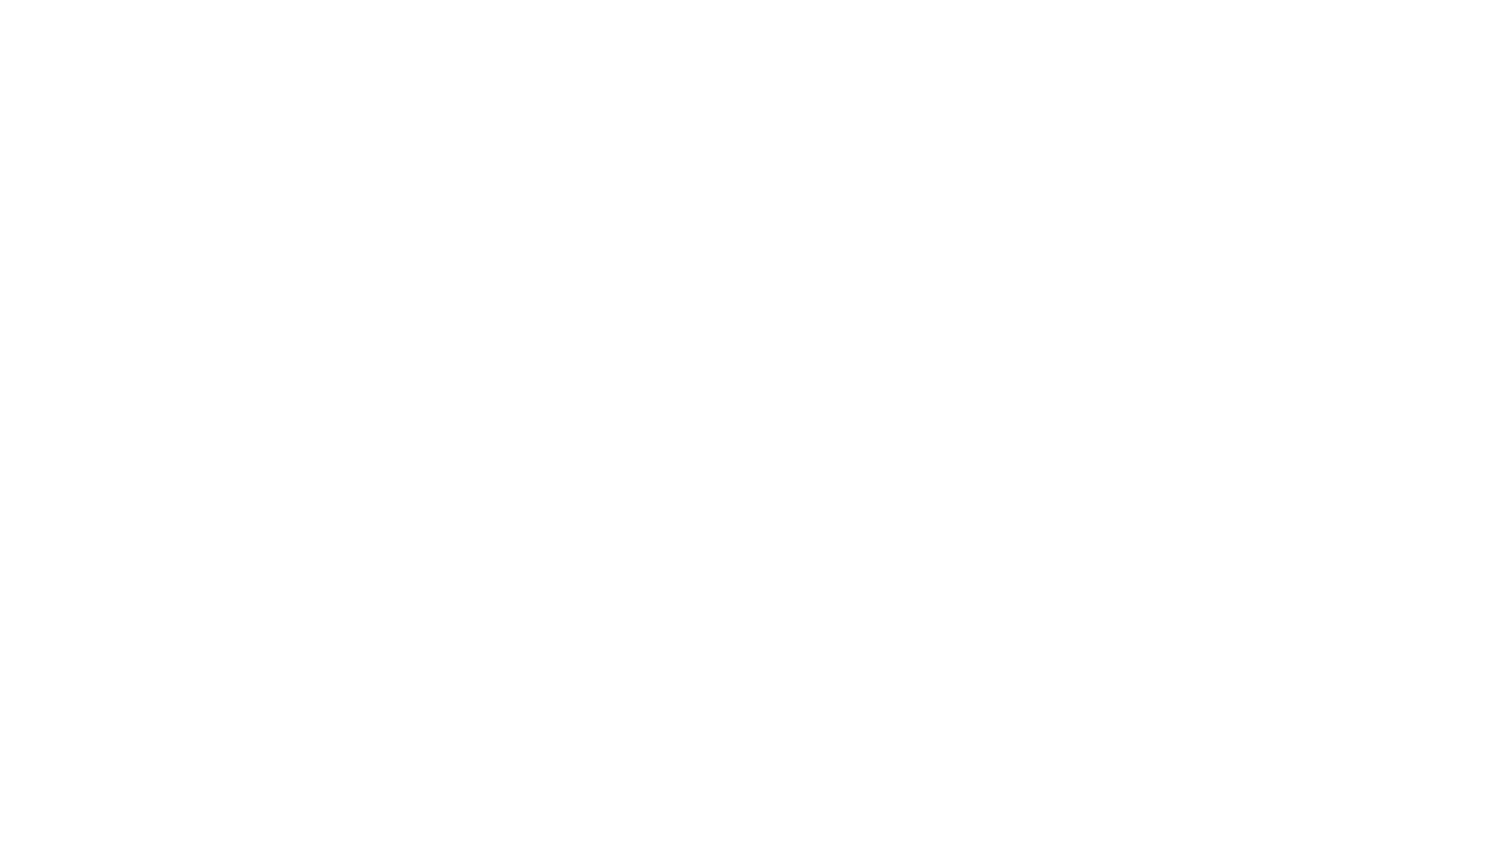 Zumiez logo pour fonds sombres (PNG transparent)